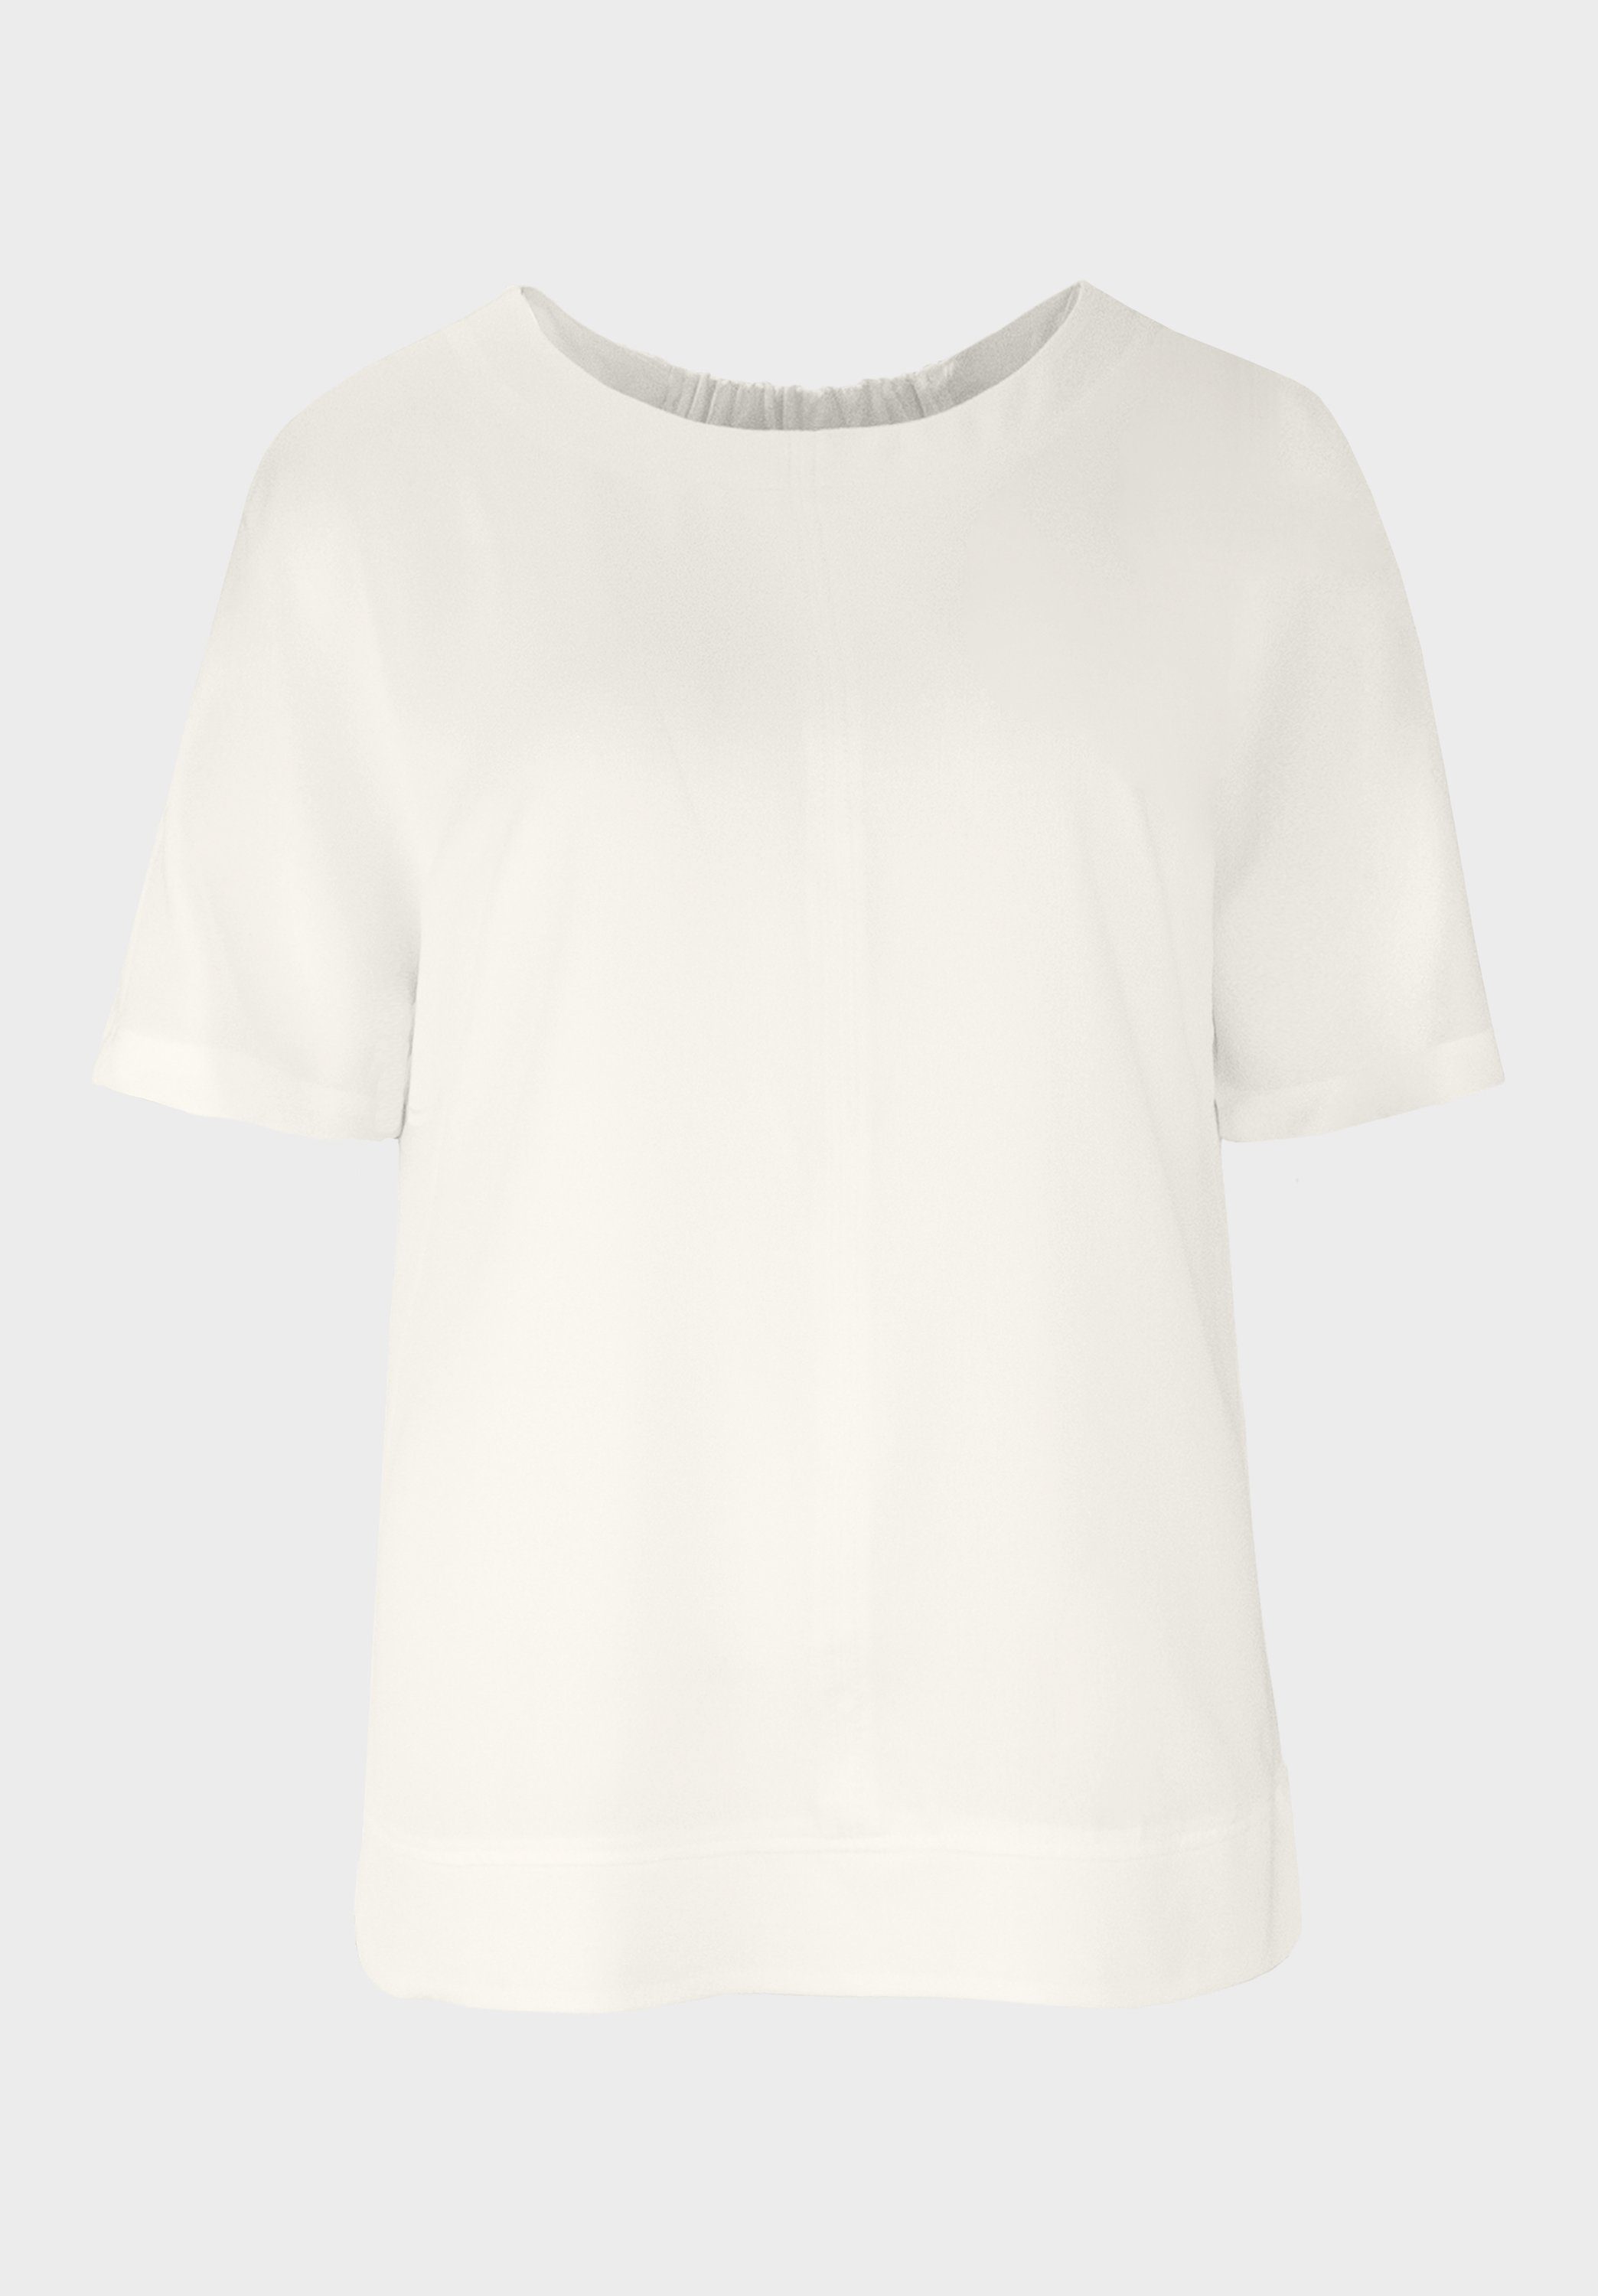 in SAHRA bianca Design mit cleanem Shirtbluse modischem Look